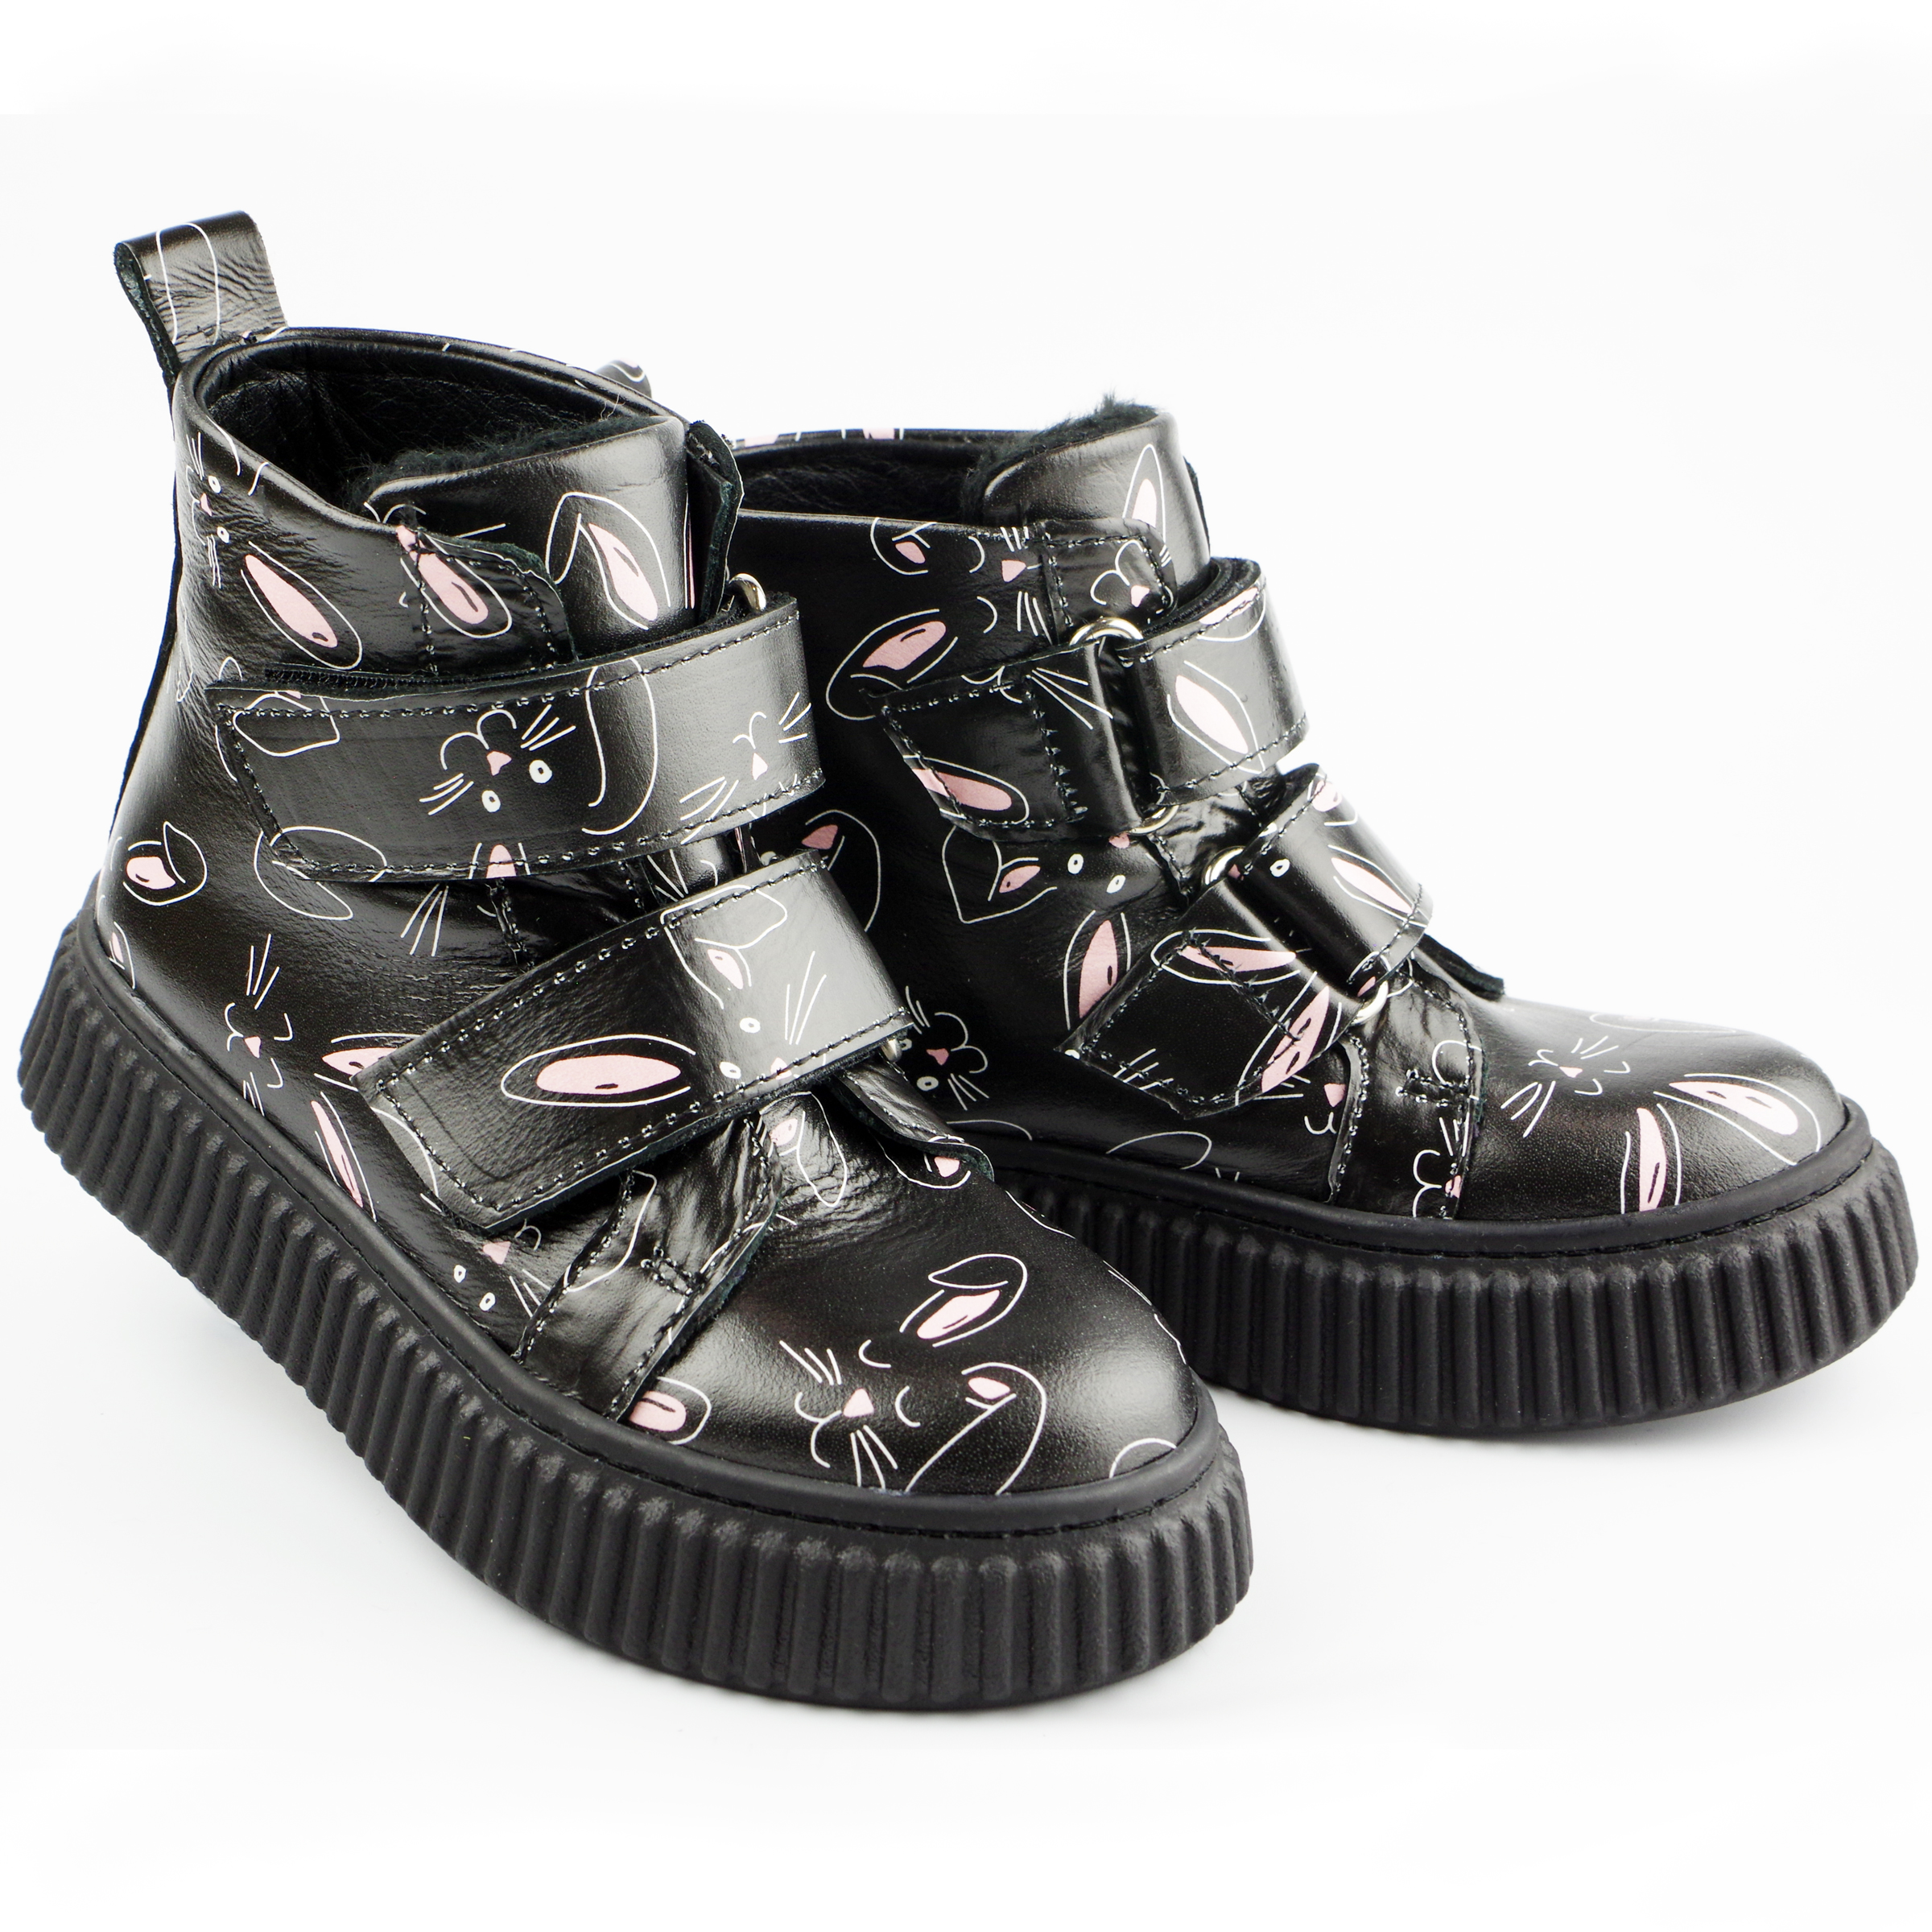 Демісезонні черевики Зайчата (2121) для дівчинки, матеріал Натуральна шкіра, Чорний колір, 26-30 розміри – Sole Kids. Фото 2